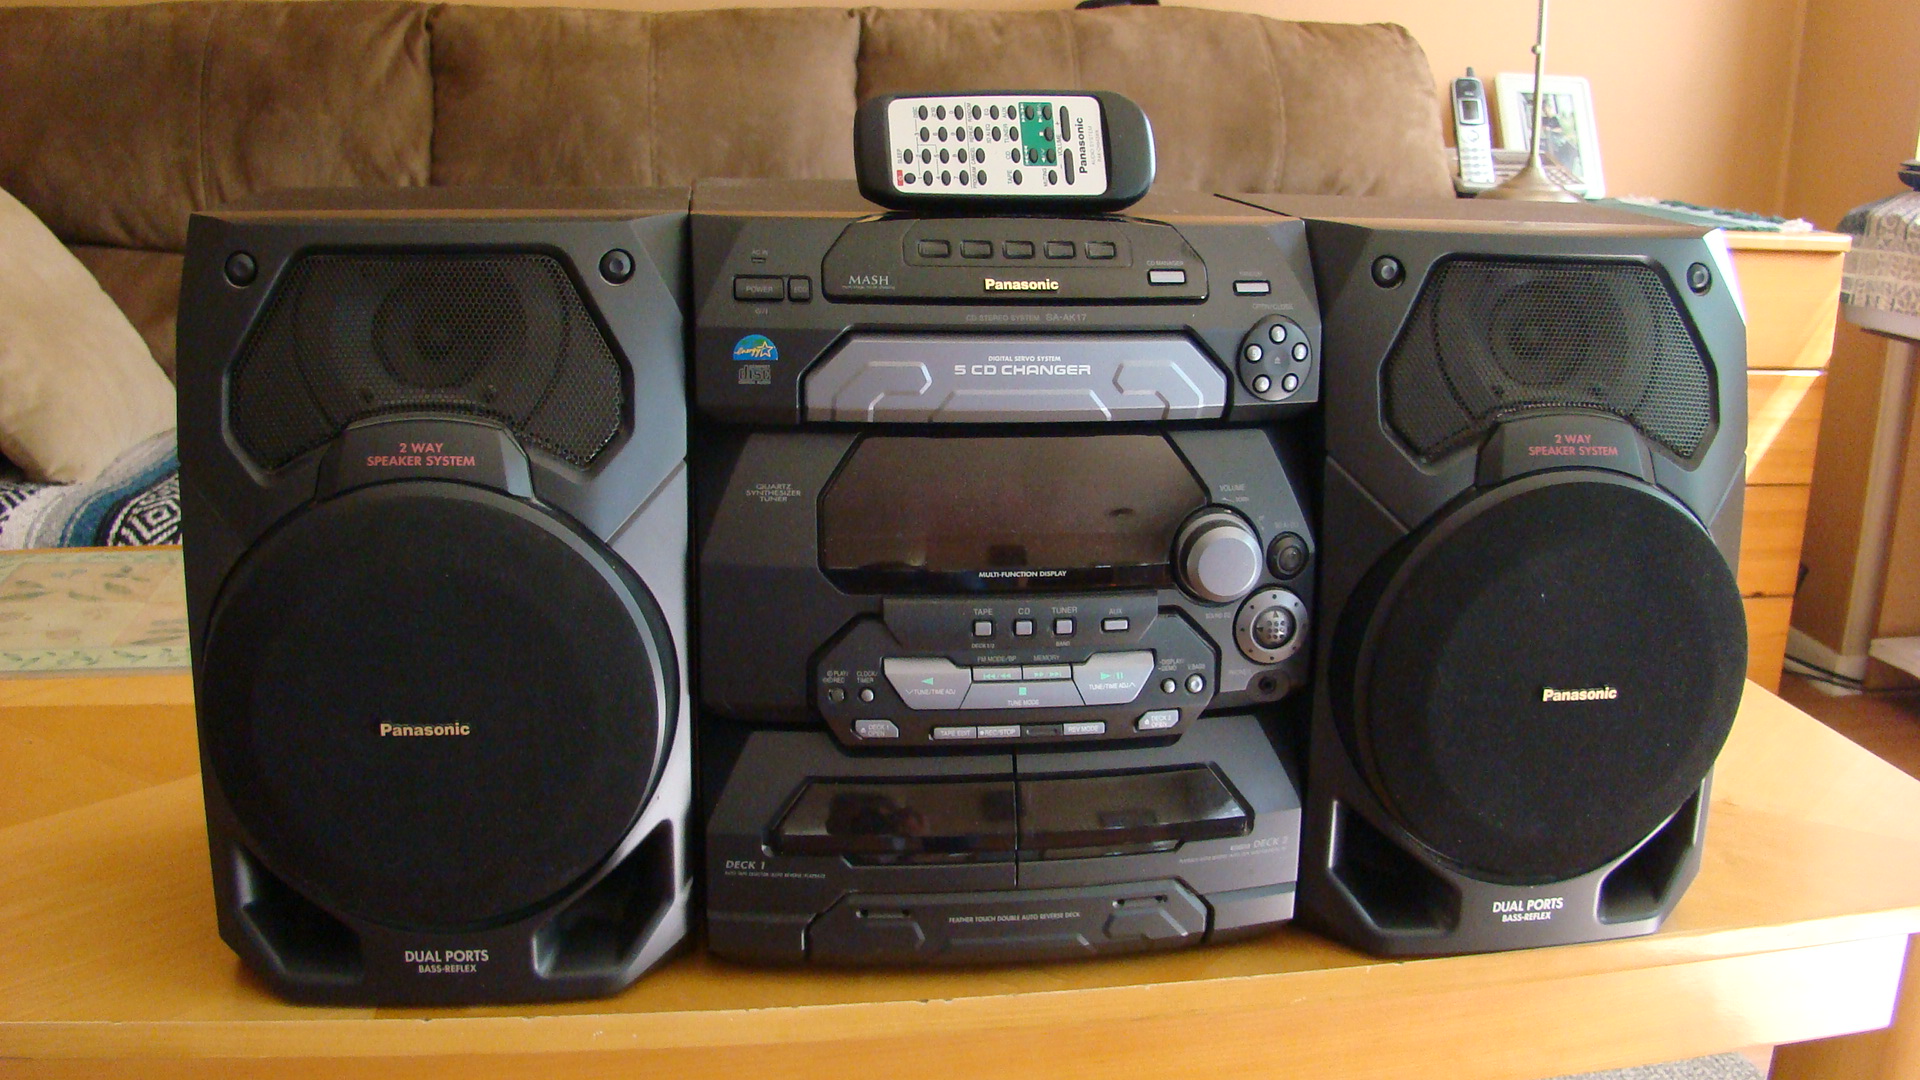 Ogłoszenie darmowe. Lokalizacja:  USA. ARCHIWALNE - Wszystkie. Panasonic stereo-AM/FM-dual casete-5 cd charger.